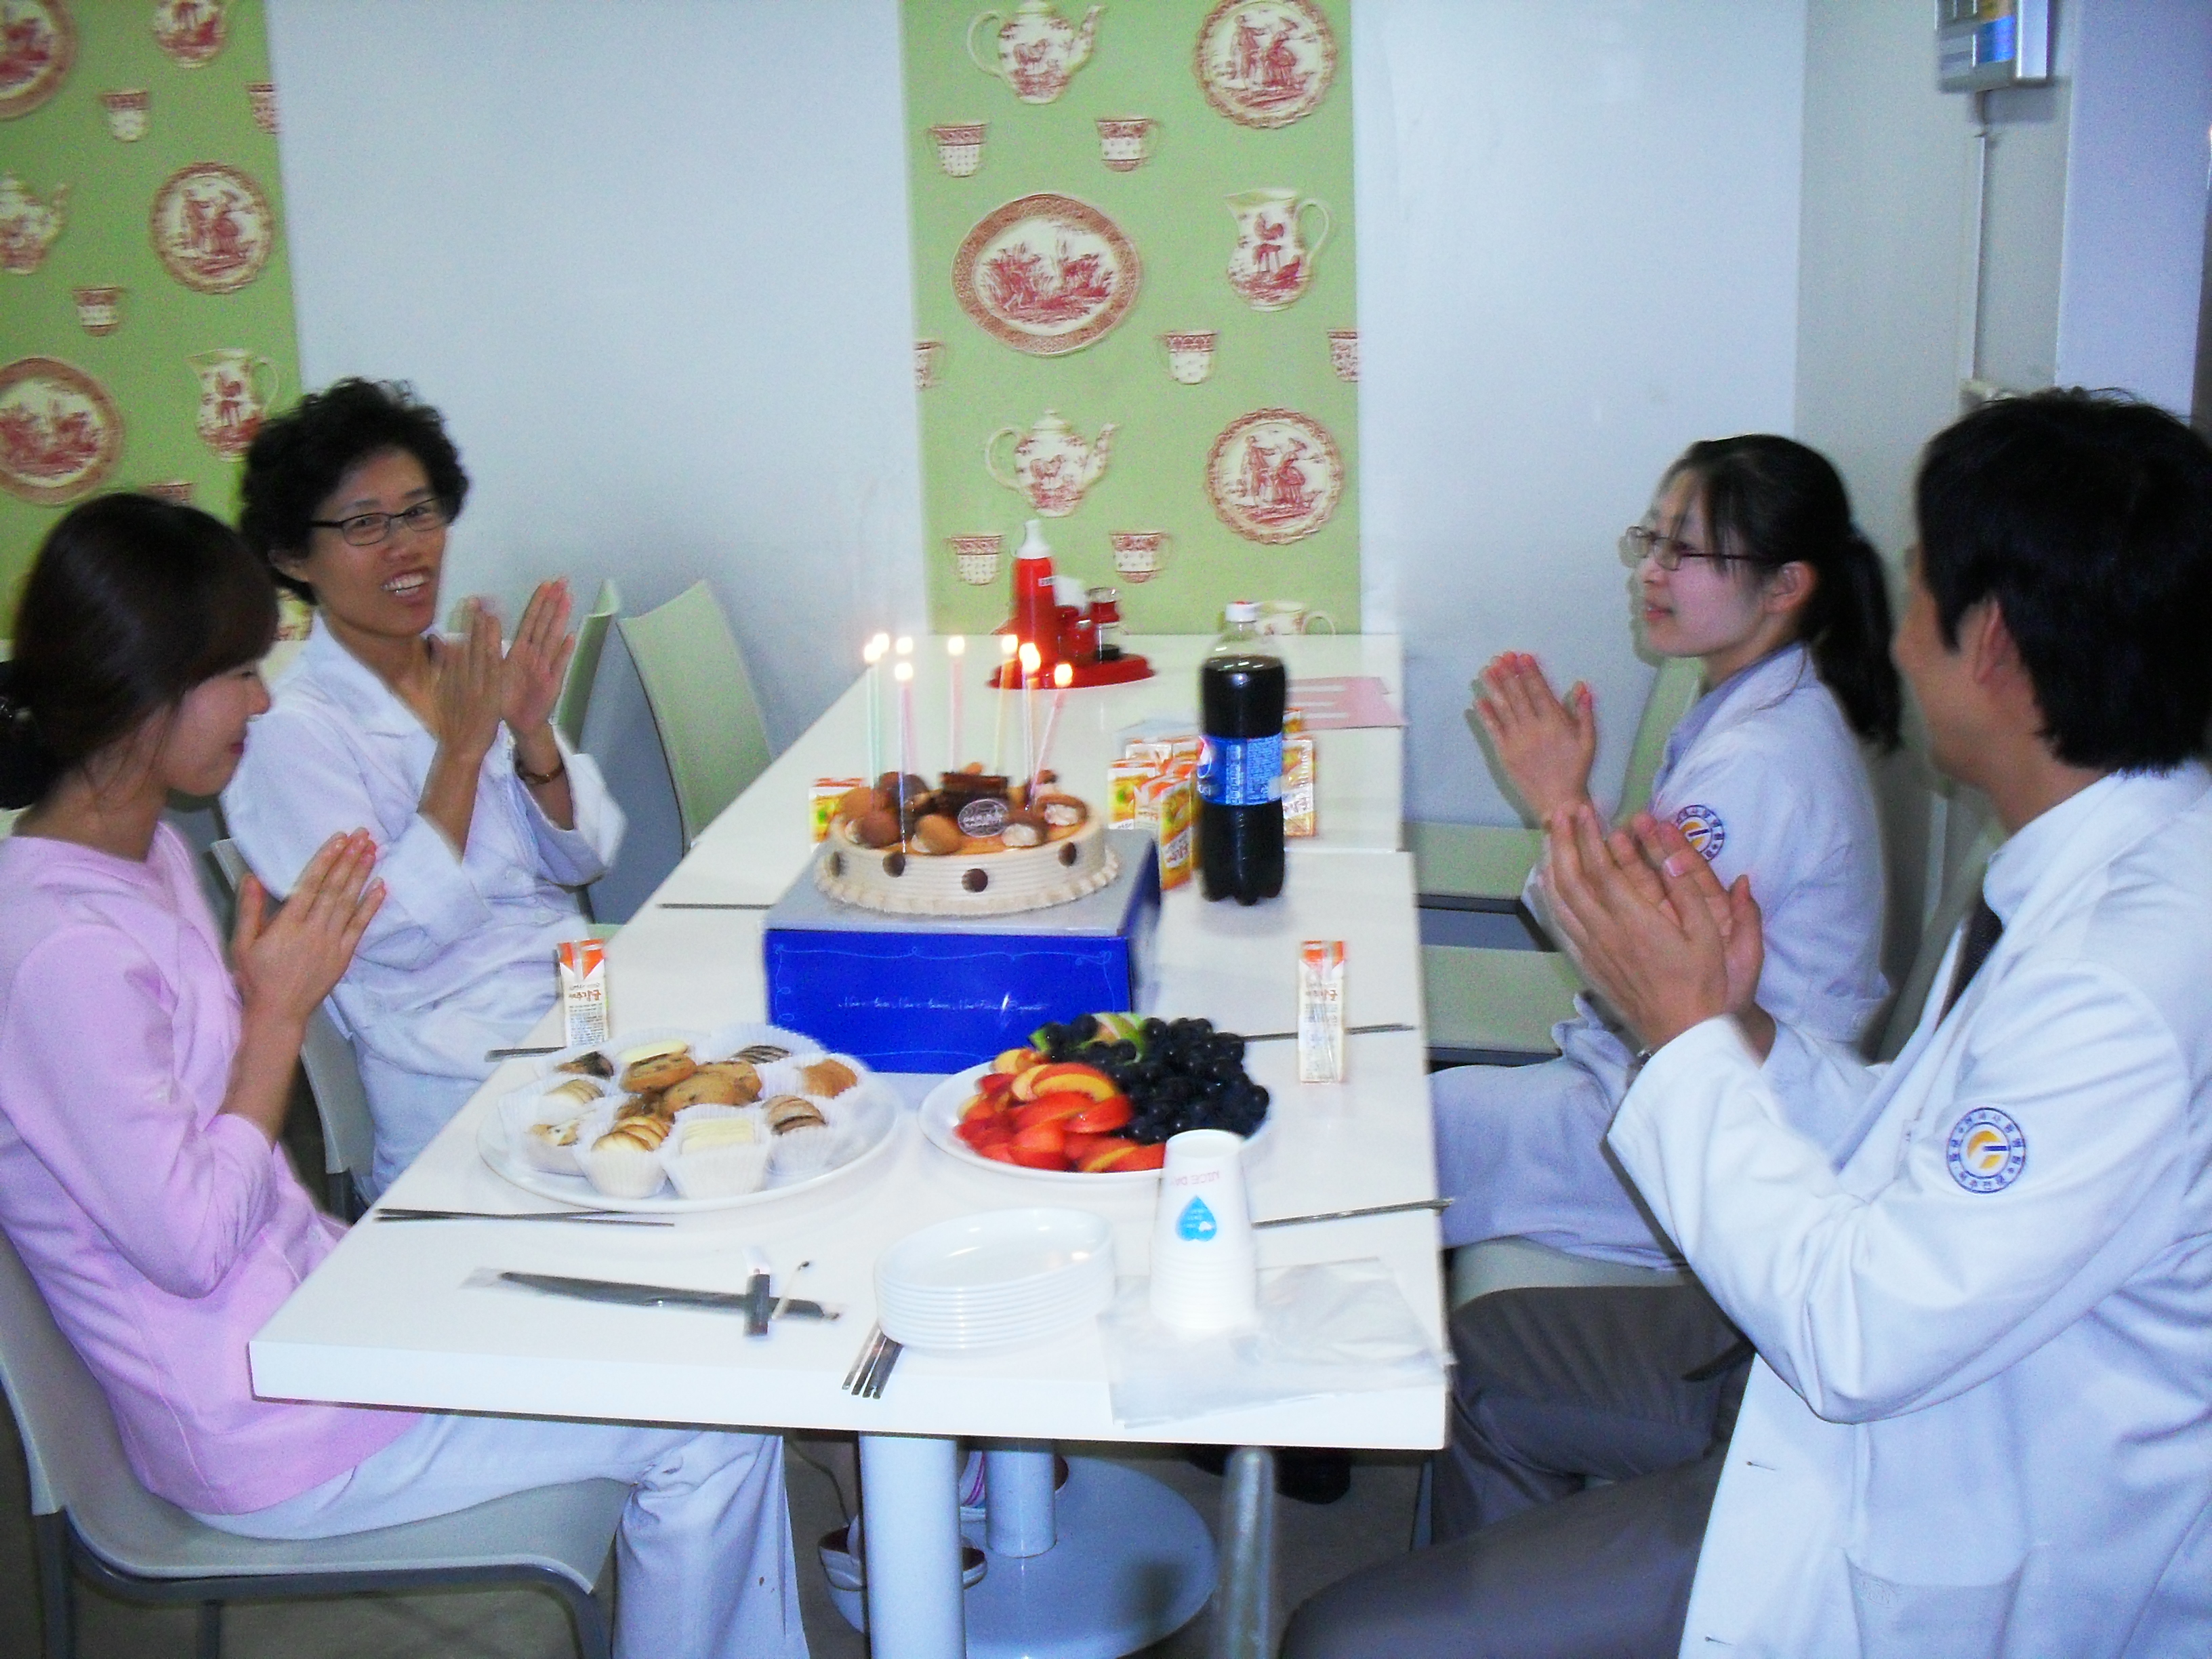 강남 연세사랑병원 9월 생일자 파티 게시글의 2번째 첨부파일입니다.